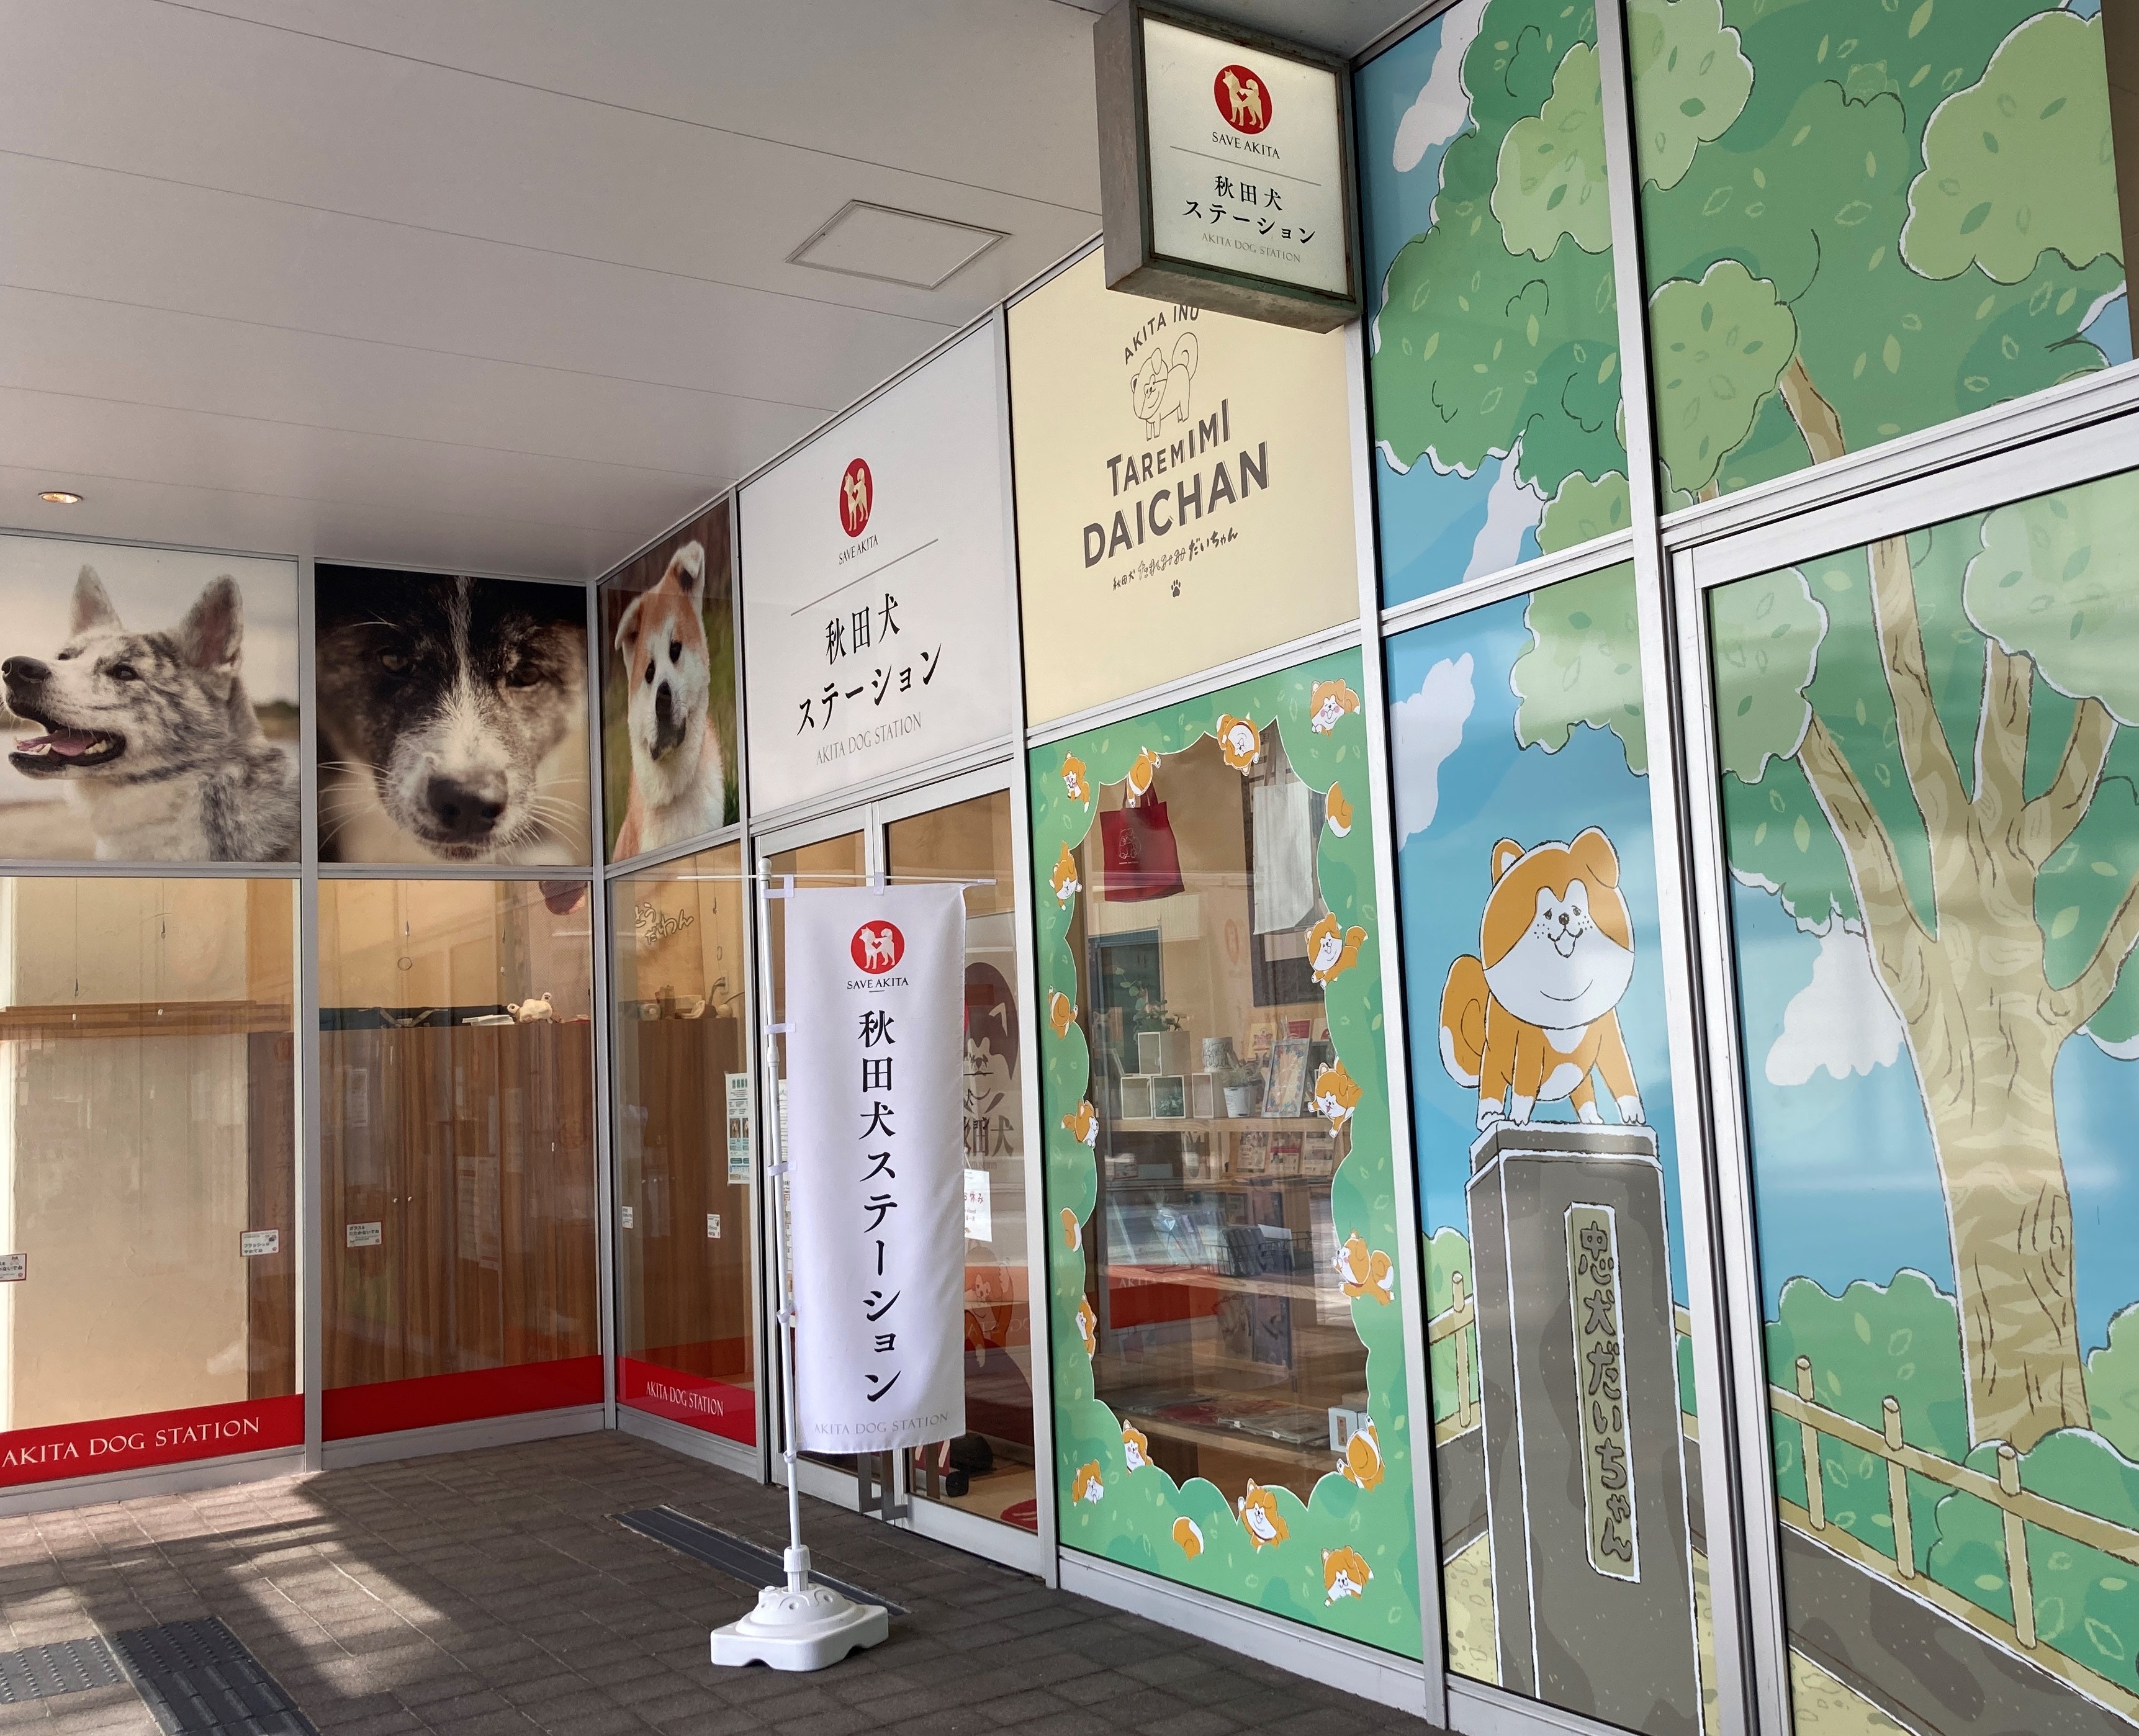 秋田犬ステーションと秋田犬サテライトステーションから、「秋田犬との交流」の時間変更と休止のお知らせです。